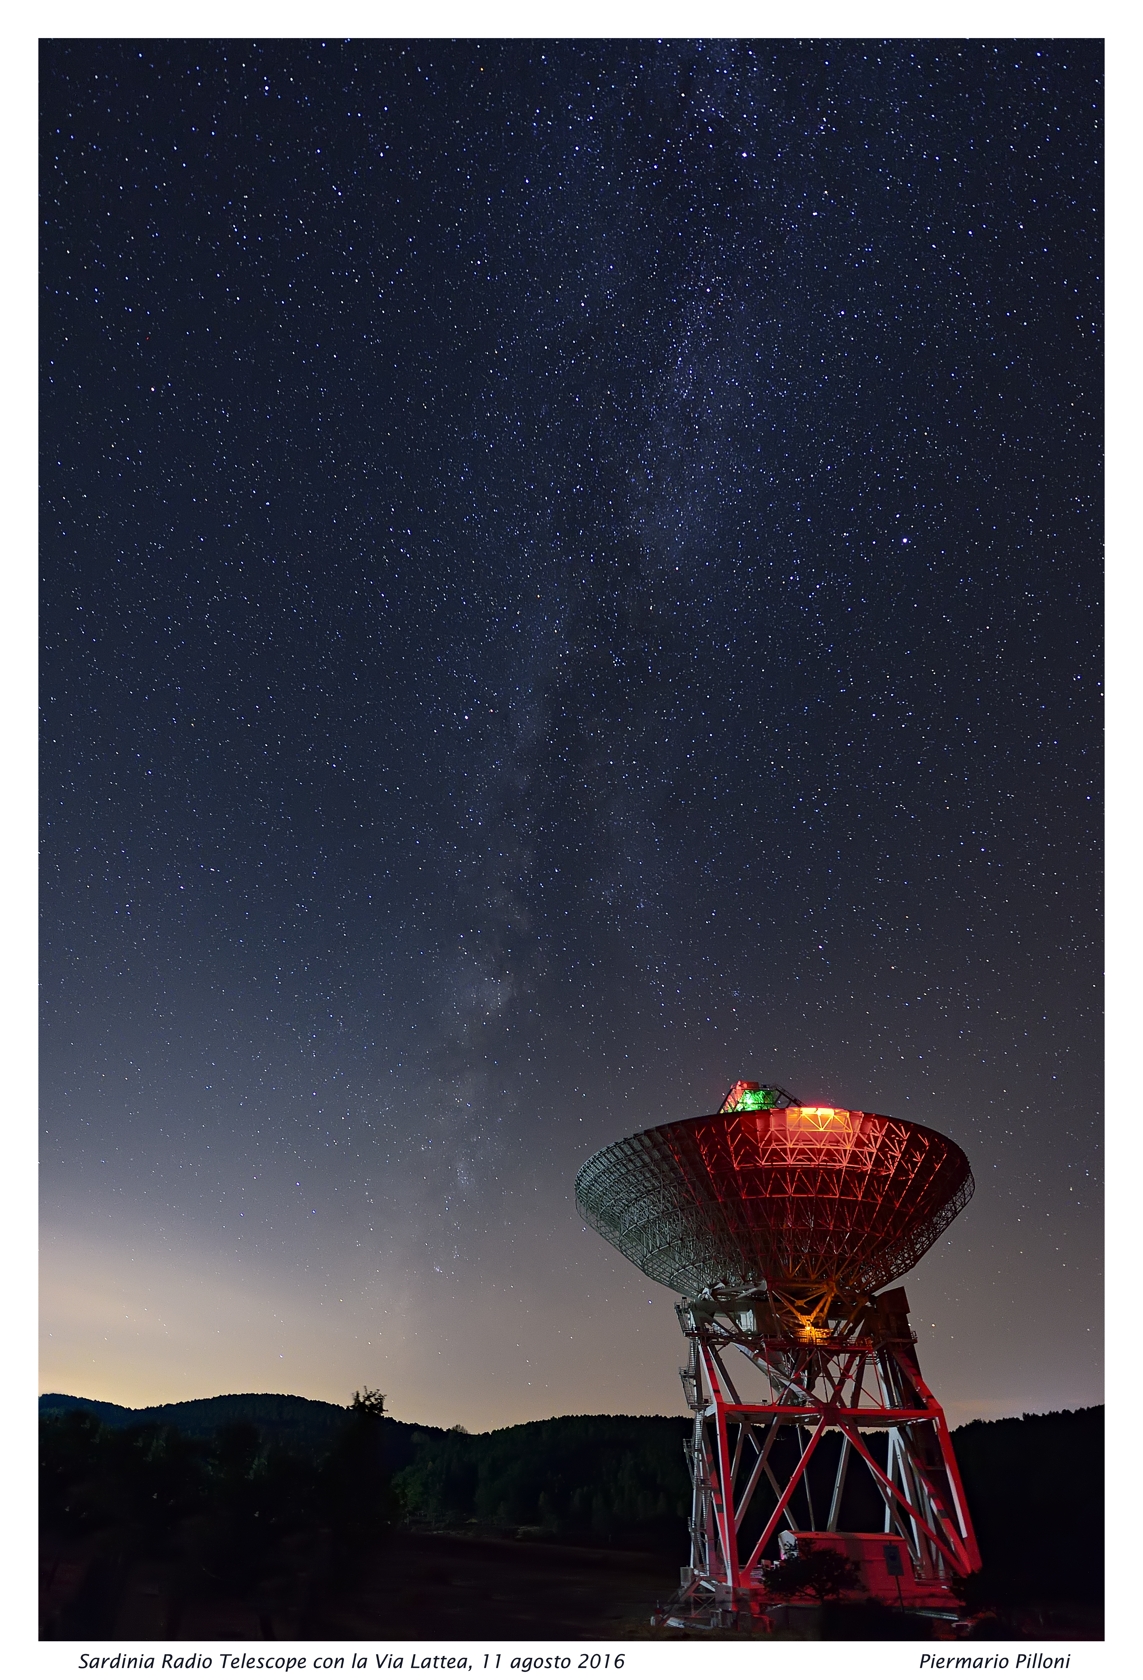 Sardinia Radio Telescope with the Milky Way...